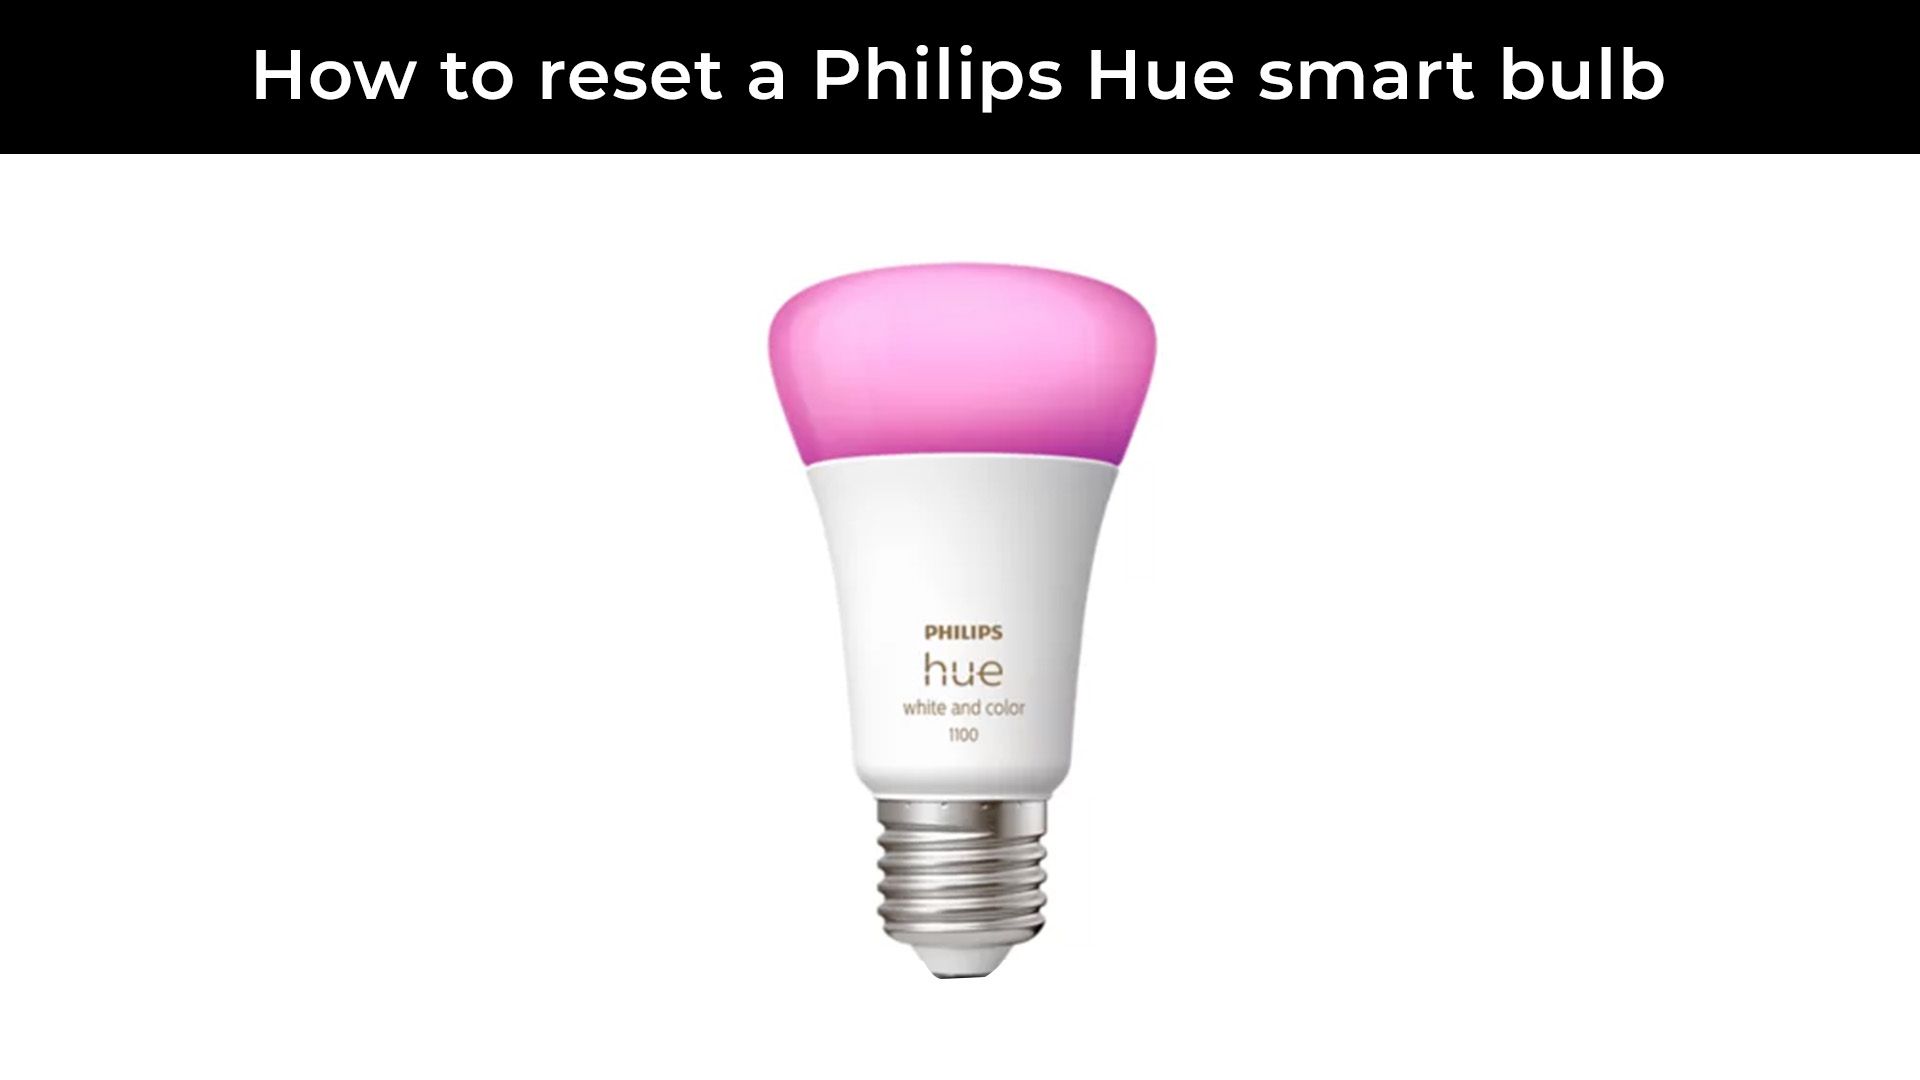 Reset de bombillas Philips Hue sin puente ni interruptor - Denriped